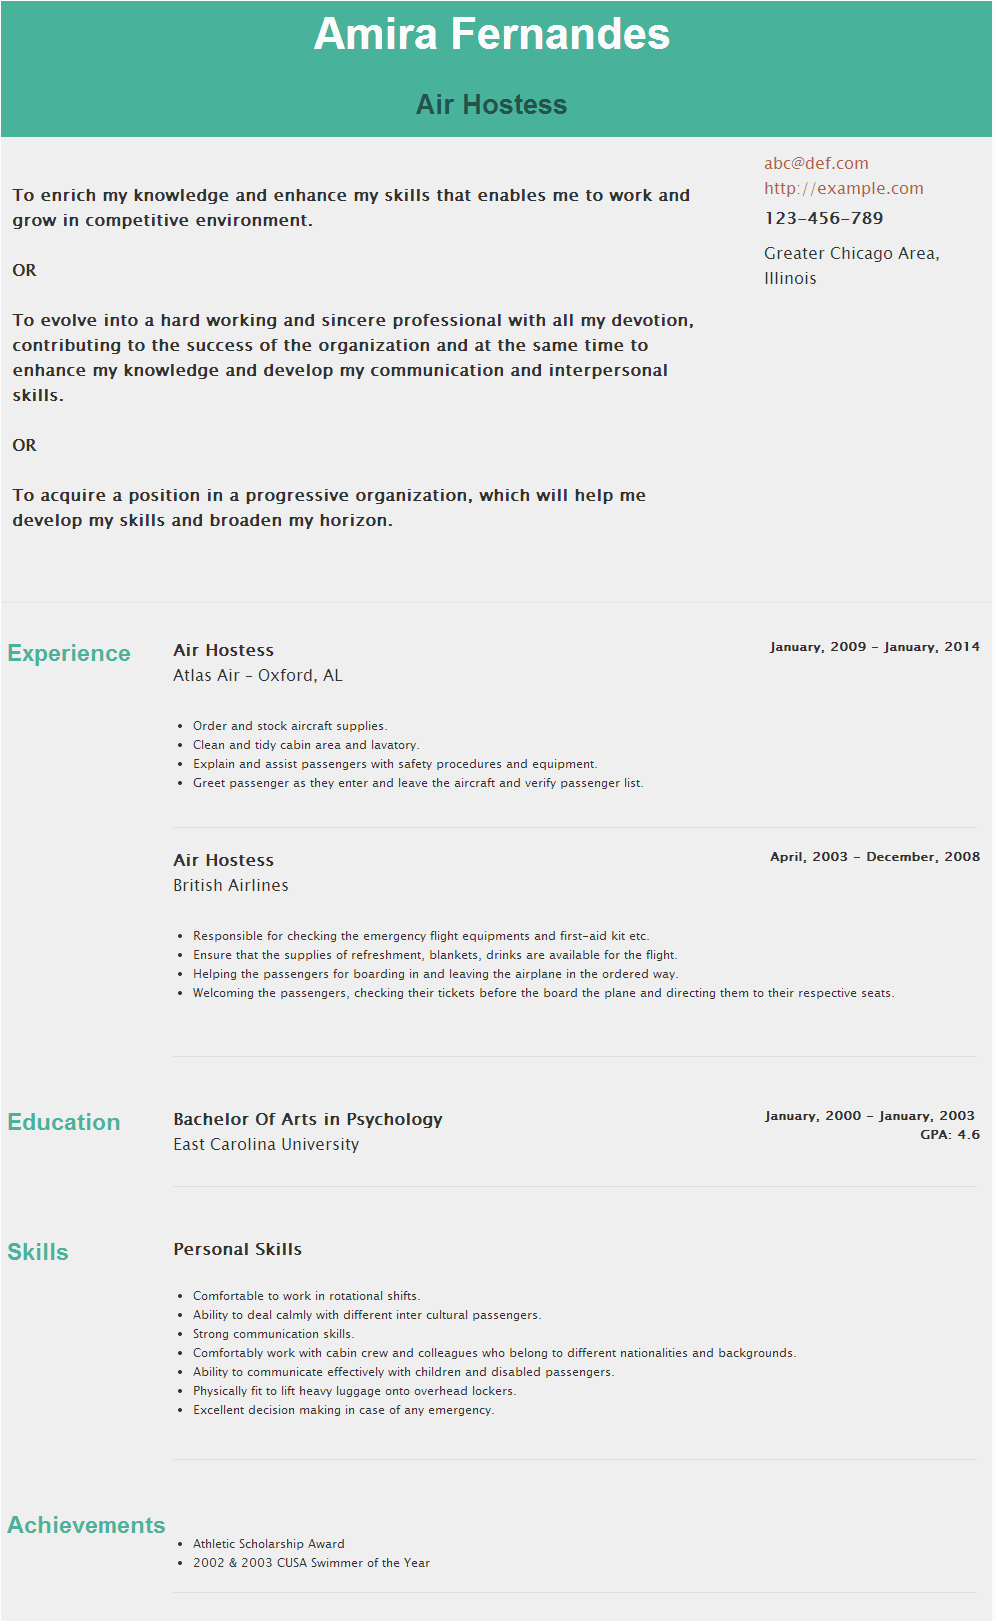 Sample Resume for Air Hostess Fresher Resume for Air Hostess Hostess